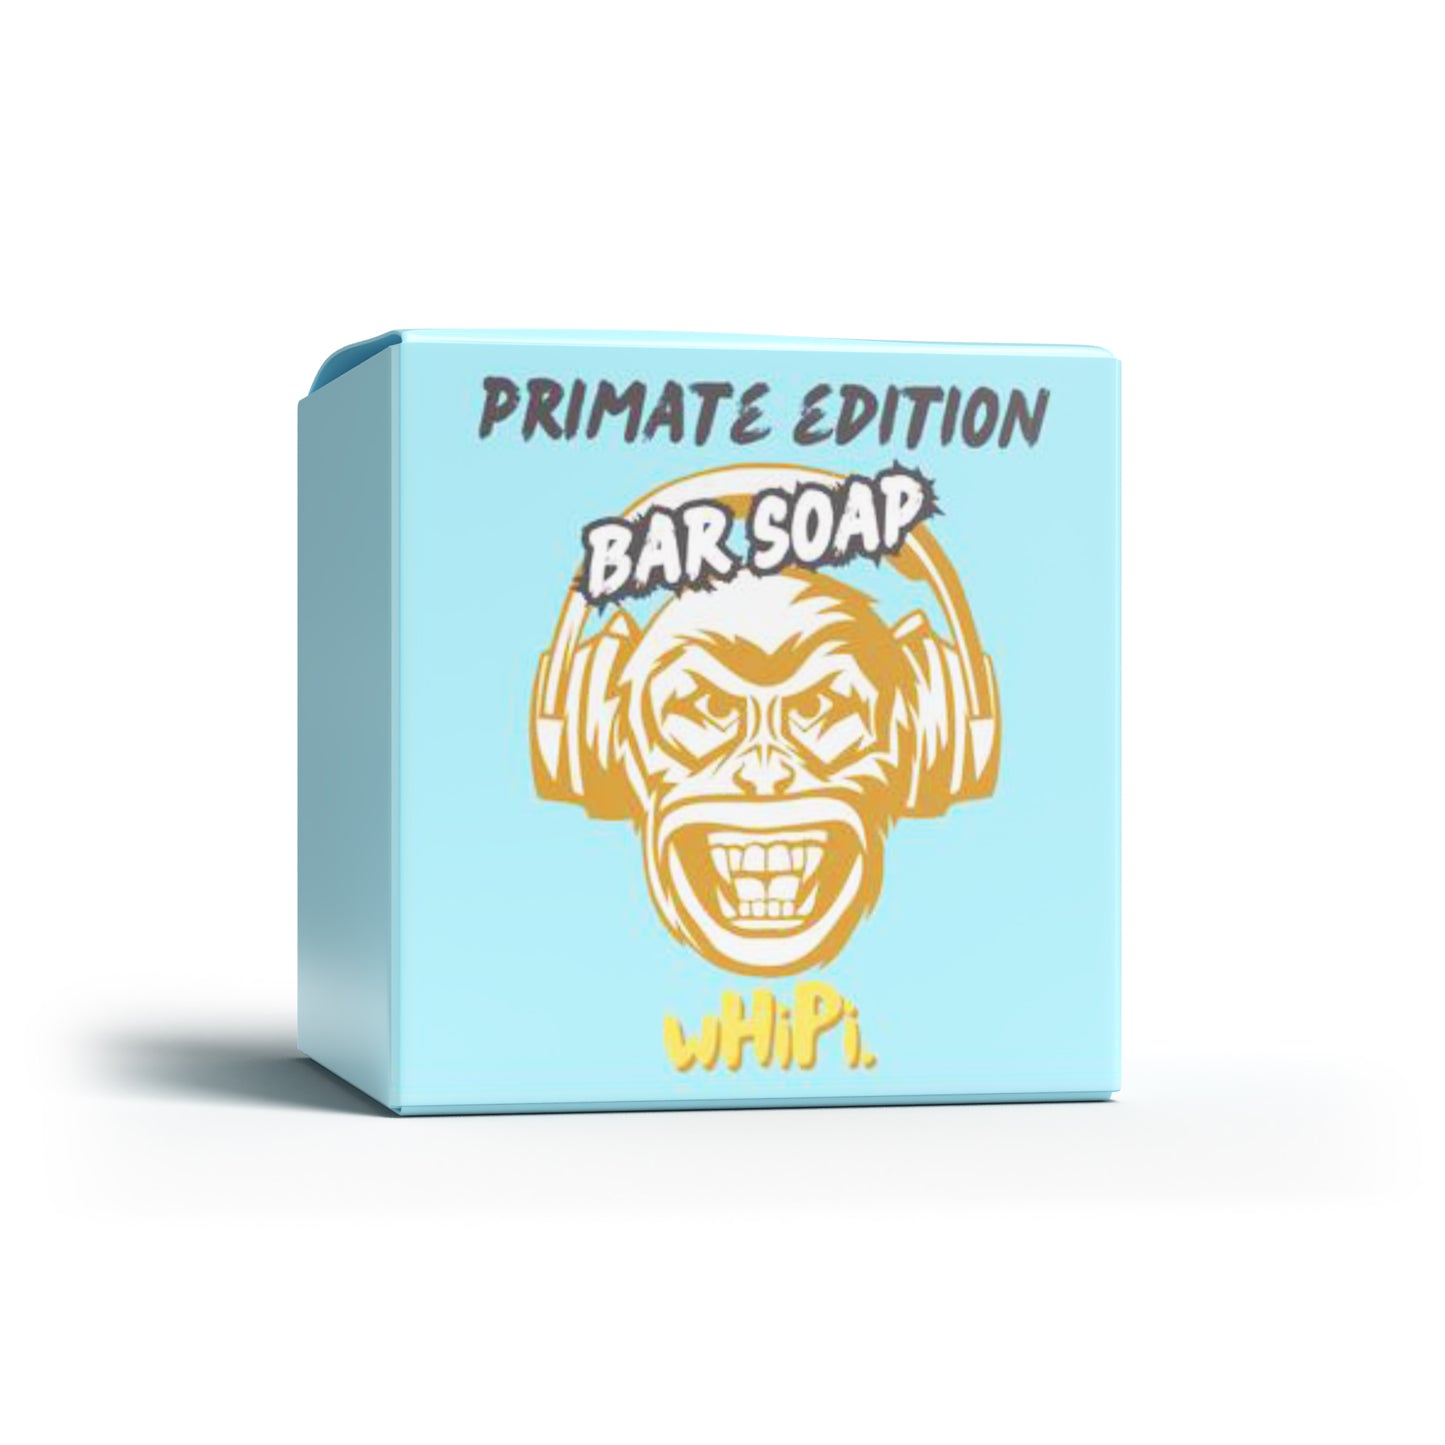 Primate Edition Bar Soap